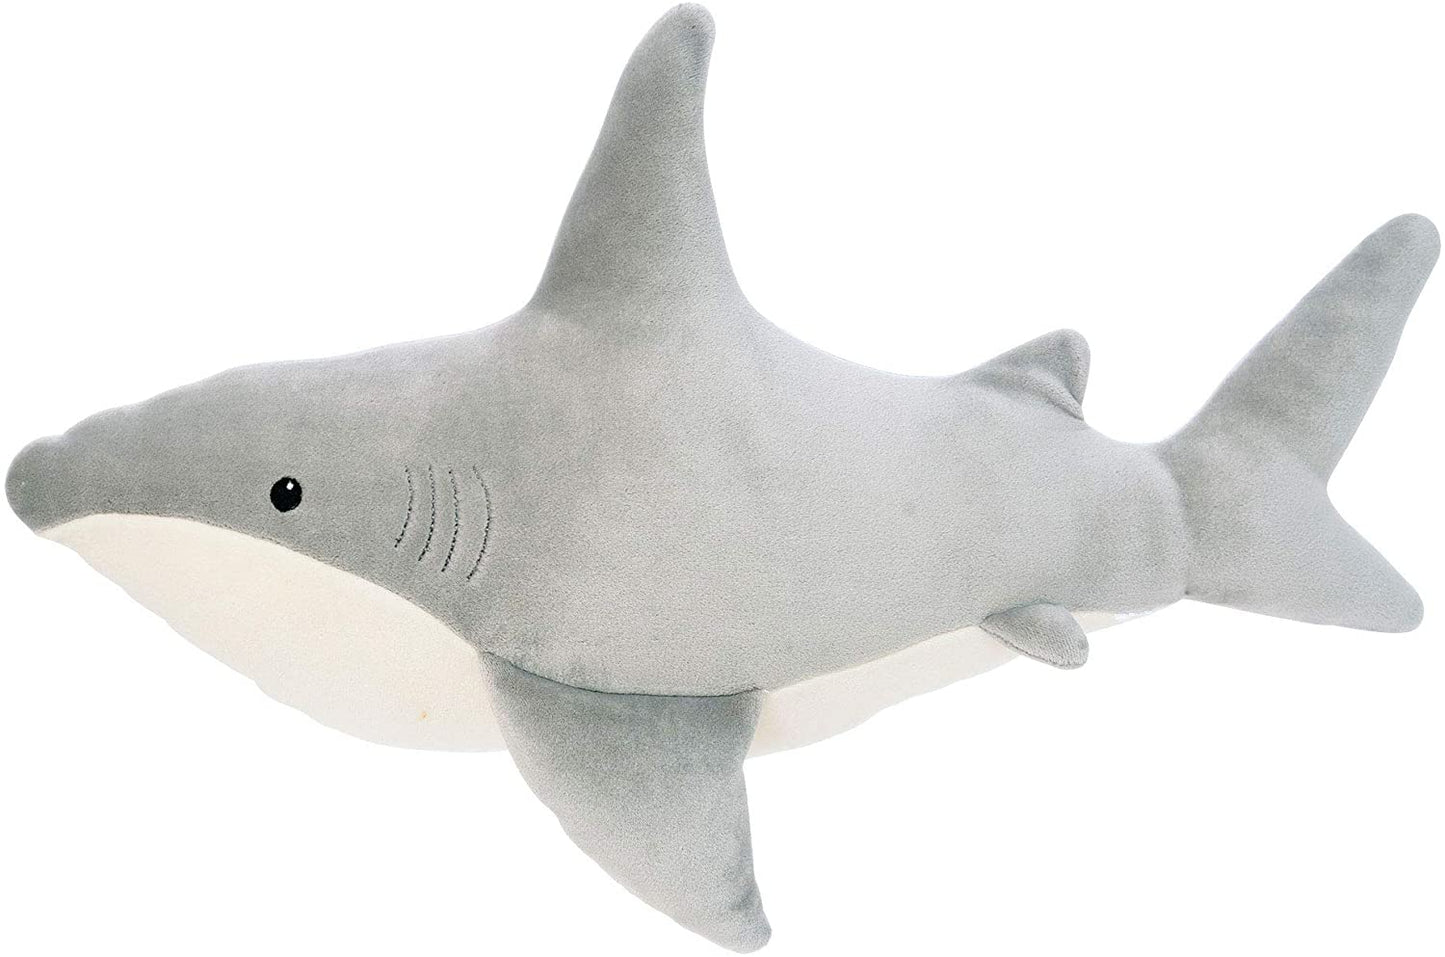 Stuffies - Velveteen Snarky Shark